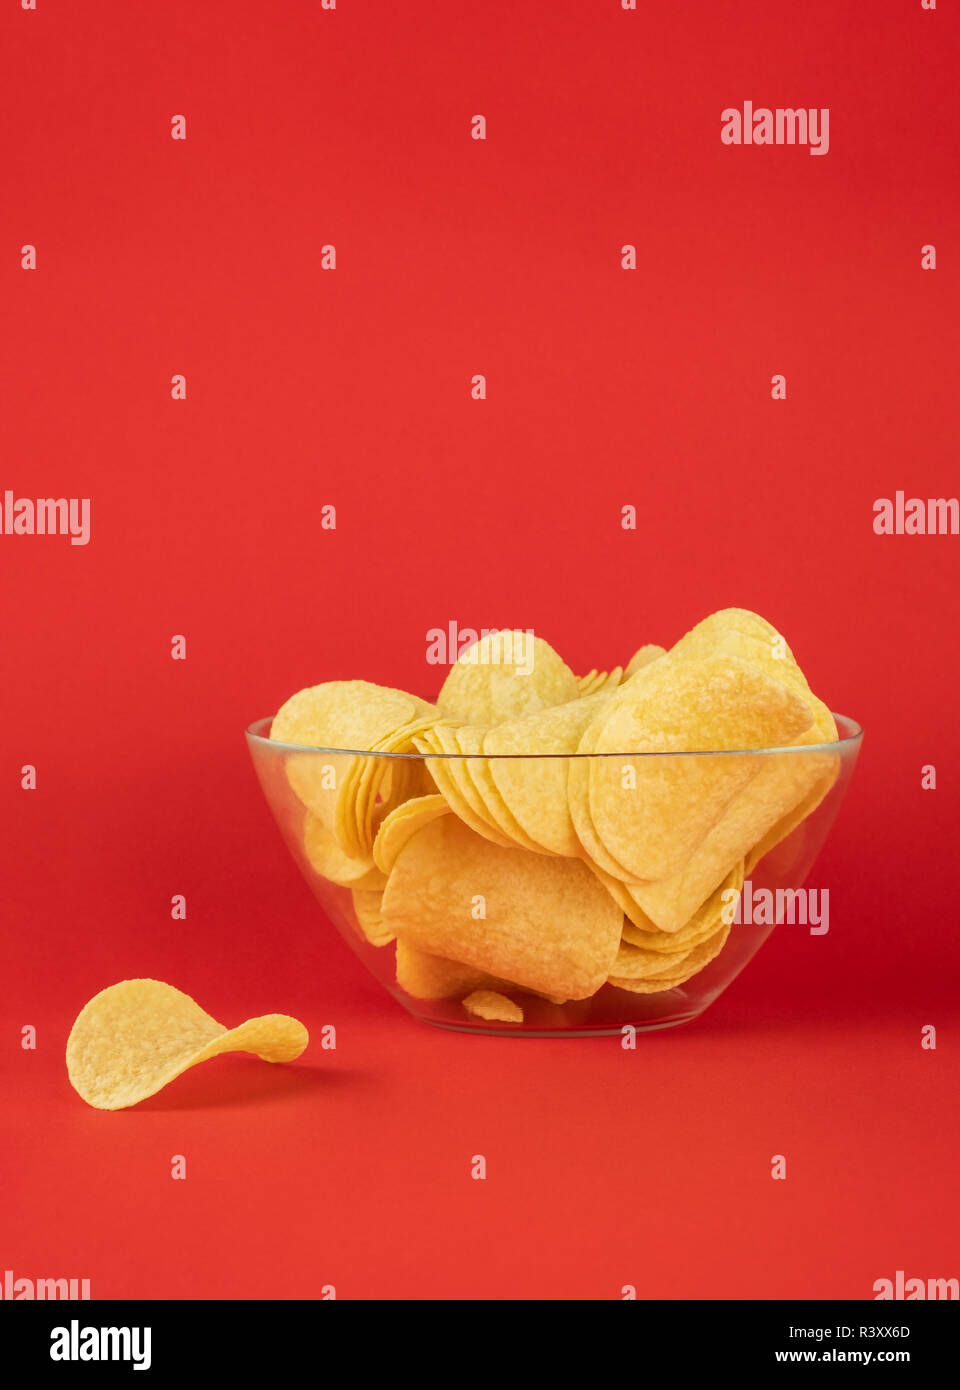 Schüssel Chips in hellen roten Hintergrund. Minimalistischer Bild von Aufmerksamkeitsstarke fast food in lebendigen Farben Stockfoto